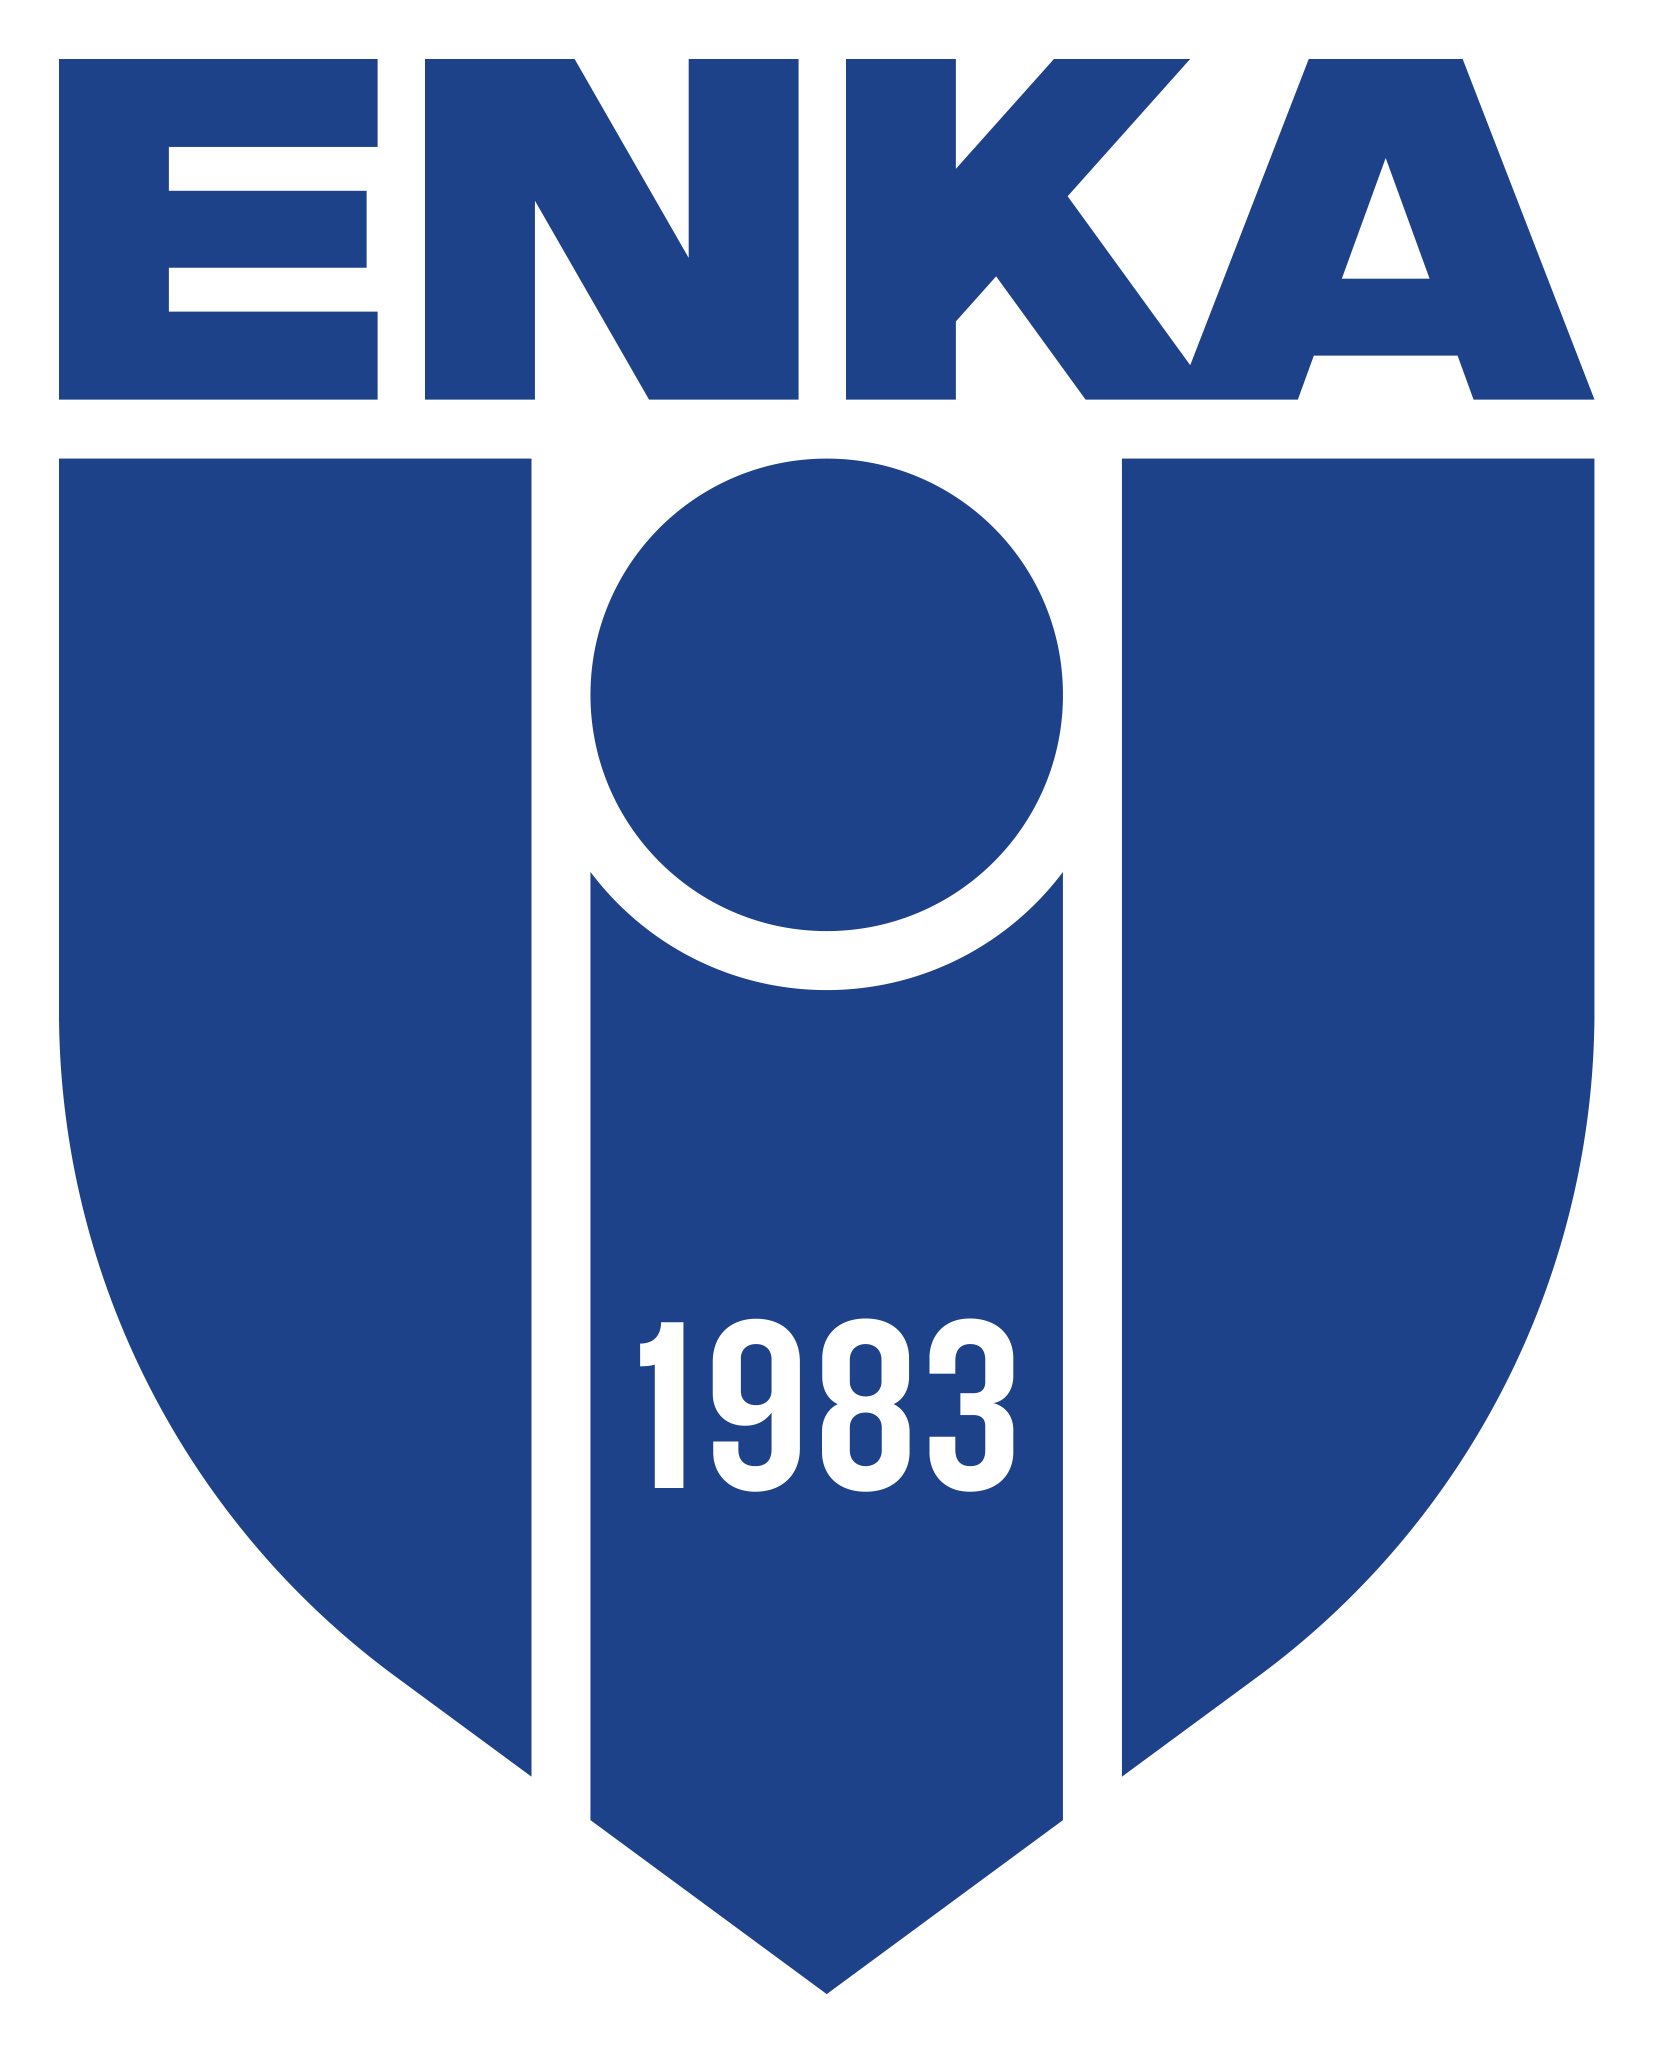 ENKA Spor Kulübü